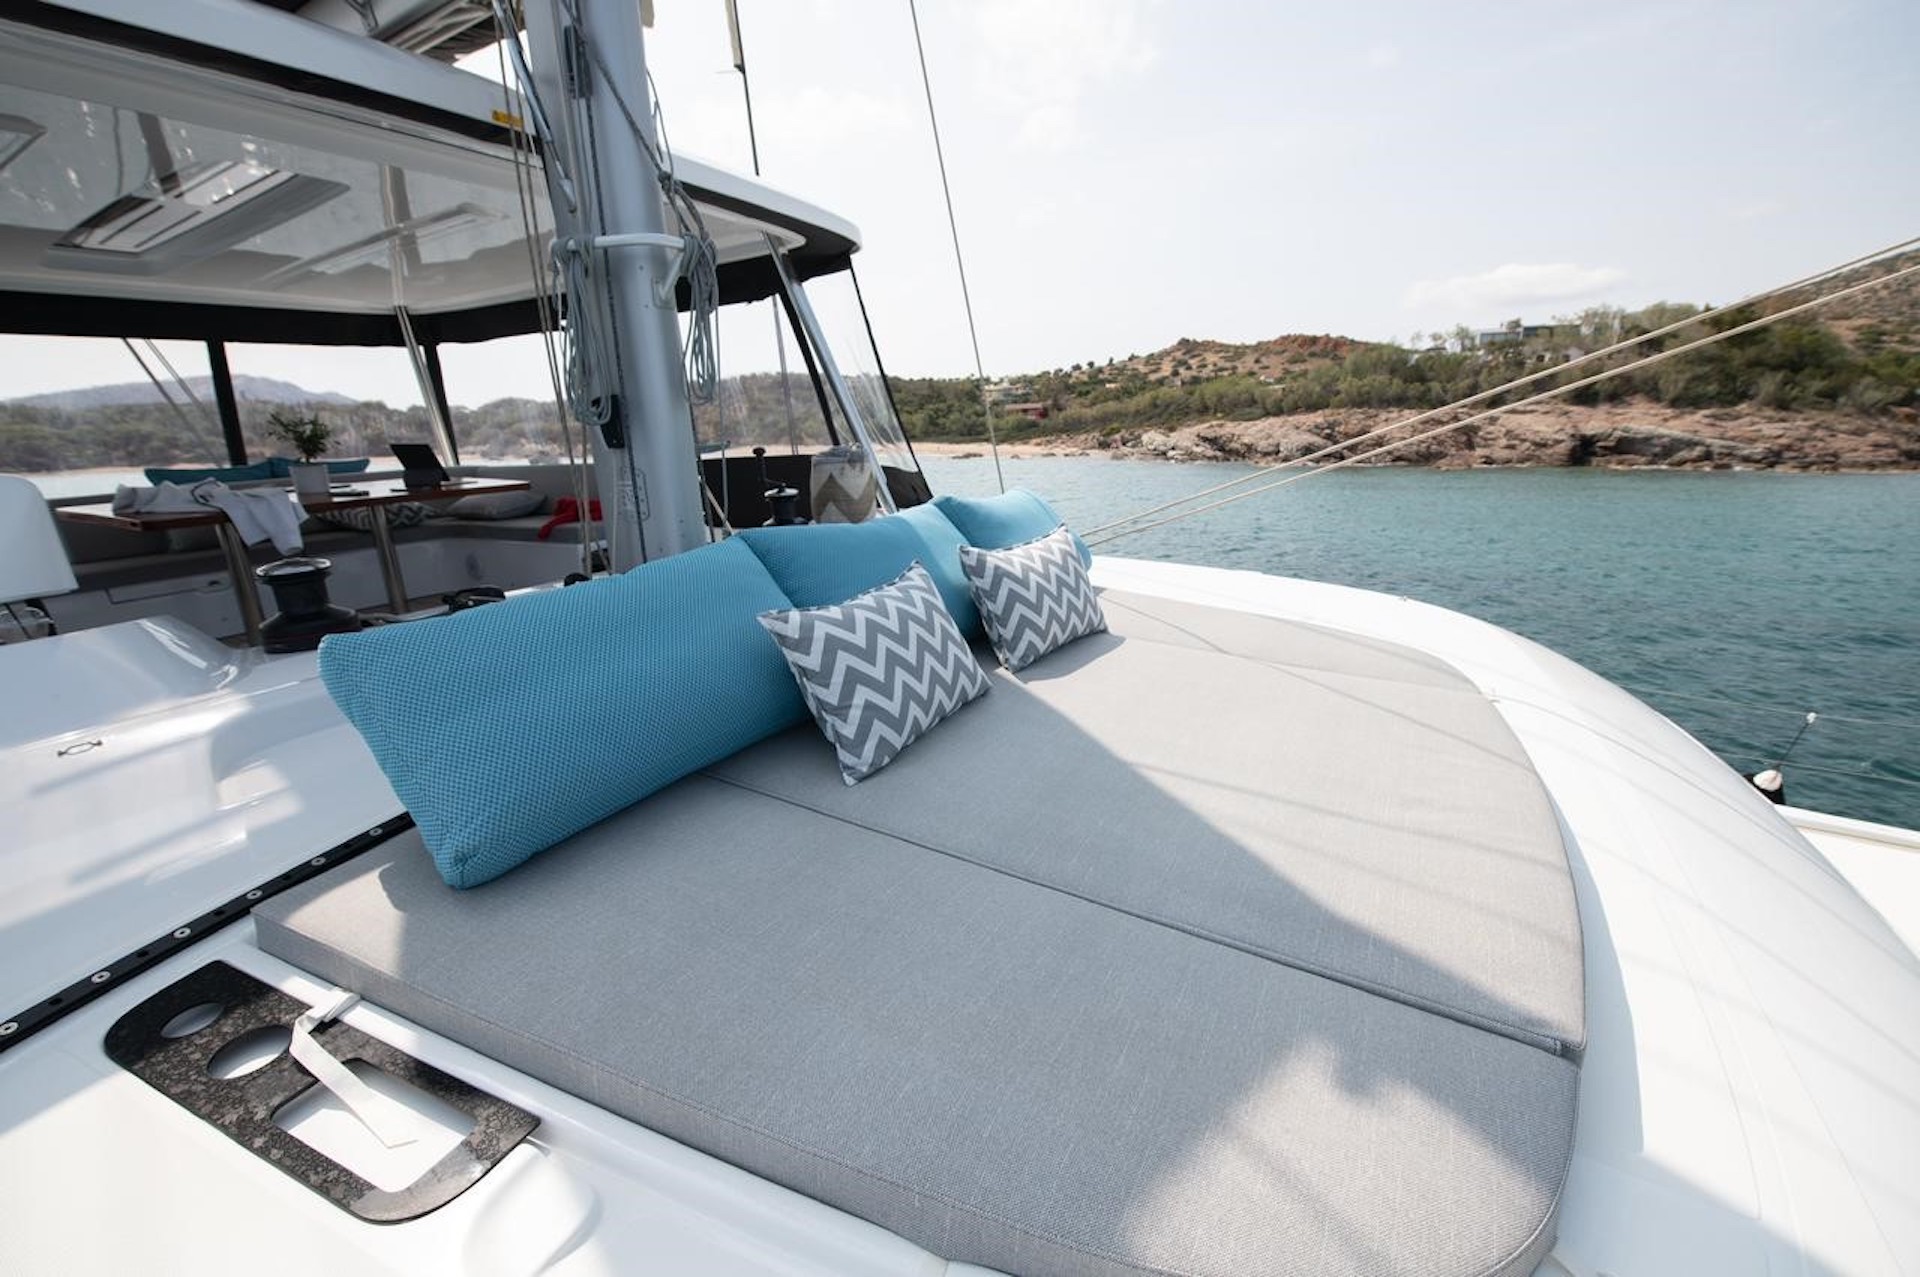 catamaran Hydrus sun deck yacht charter